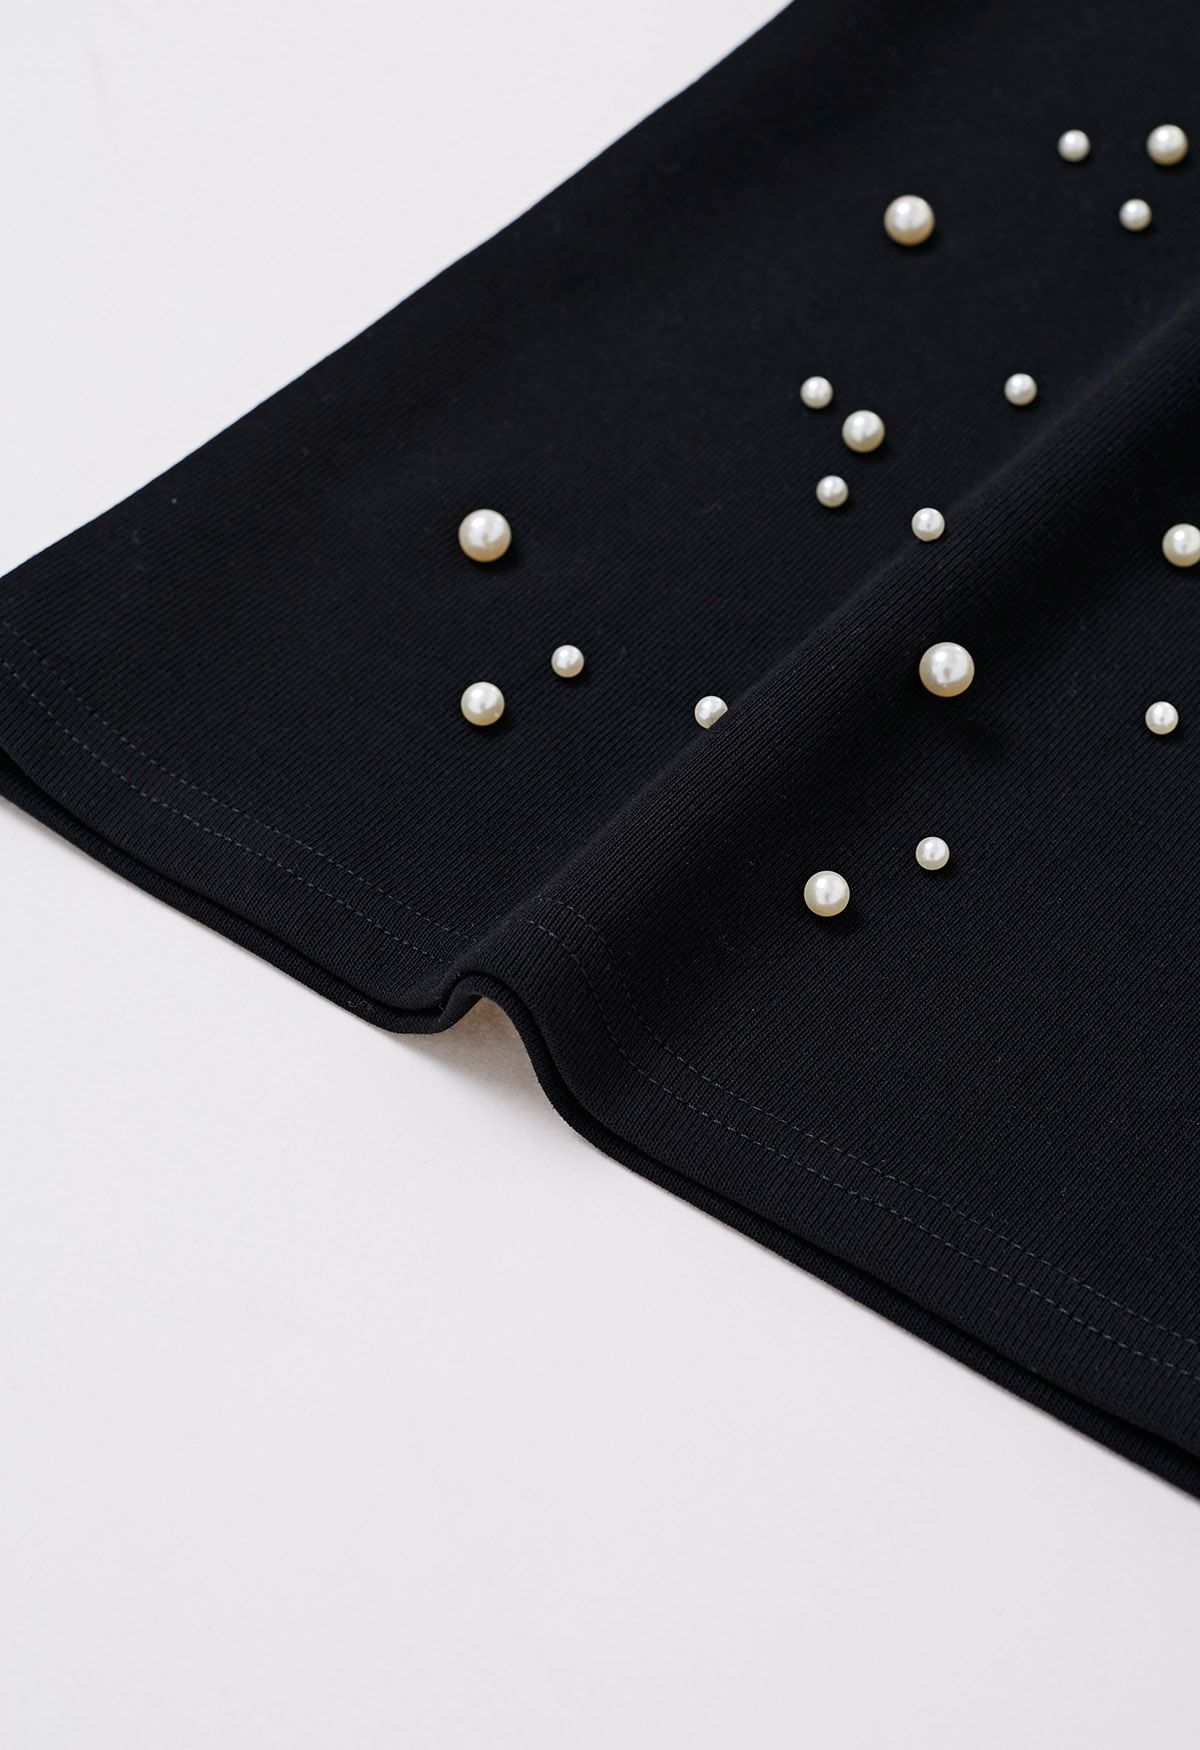 Camiseta sofisticada con ribete de perlas en negro